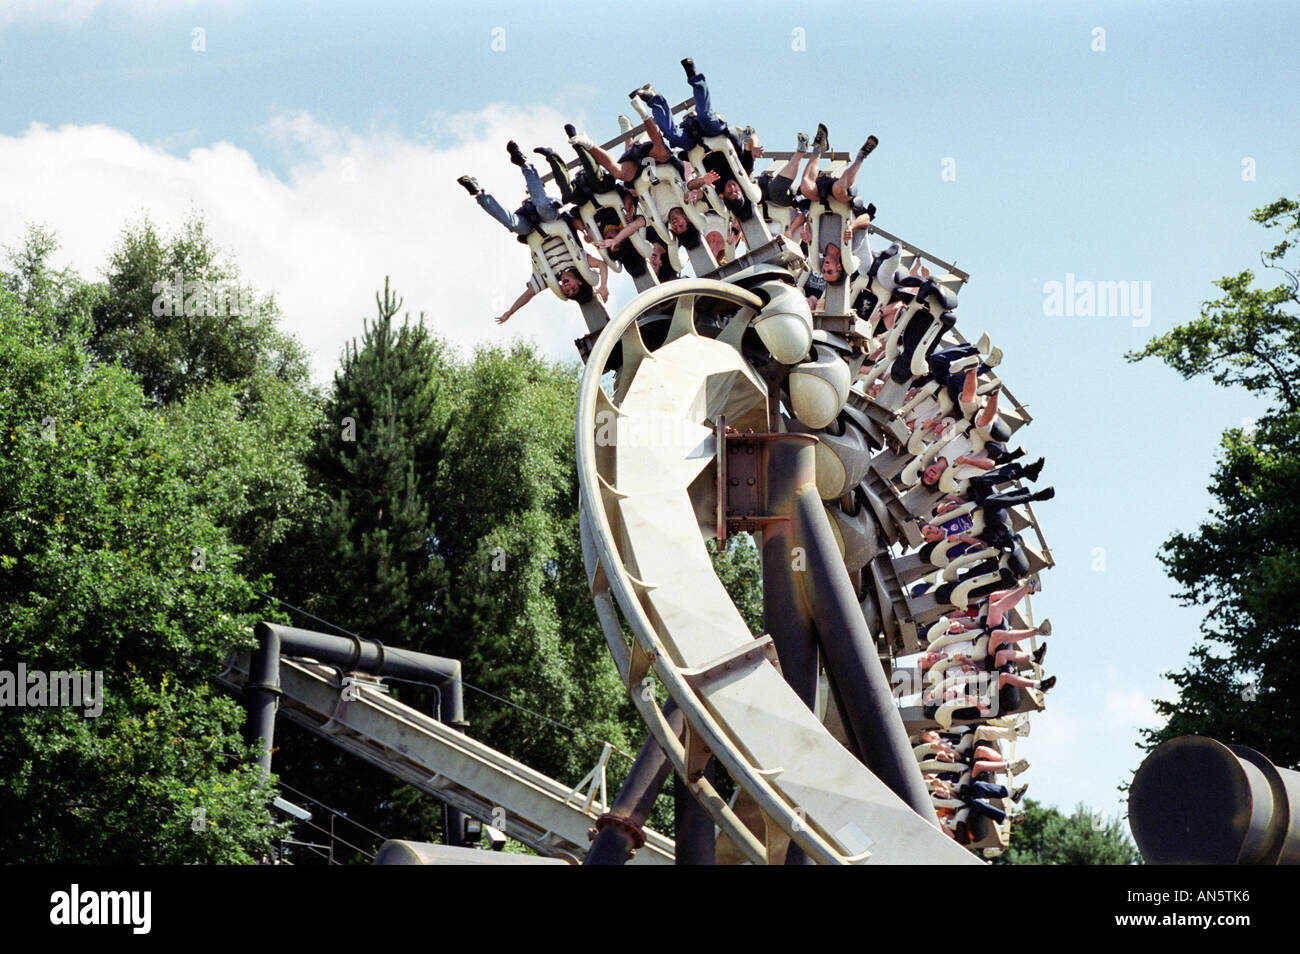 Le tire-bouchon roller coaster ride au parc d'attractions Alton Towers dans le Staffordshire UK Banque D'Images